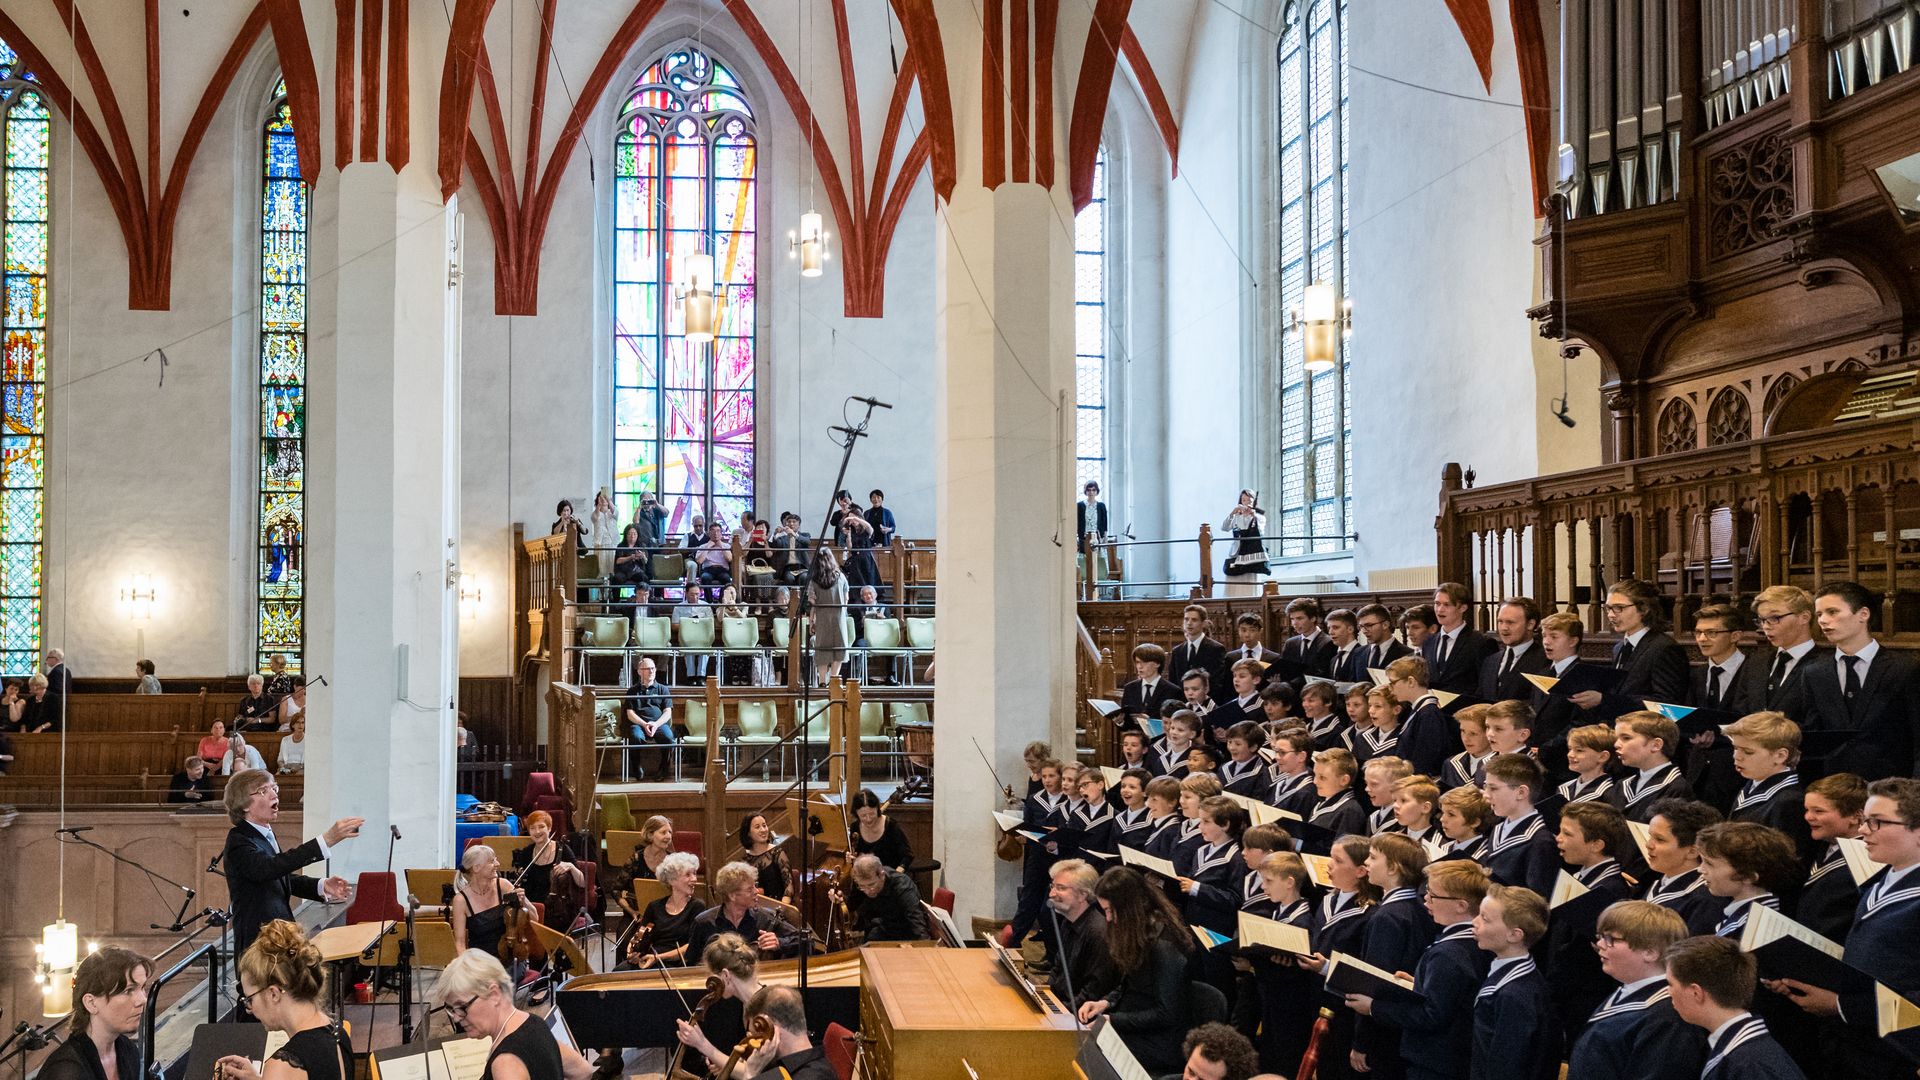 Chór Thomaner oraz orkiestra przed organami w Kościele Thomaskirche podczas Święta Bacha w Lipsku.